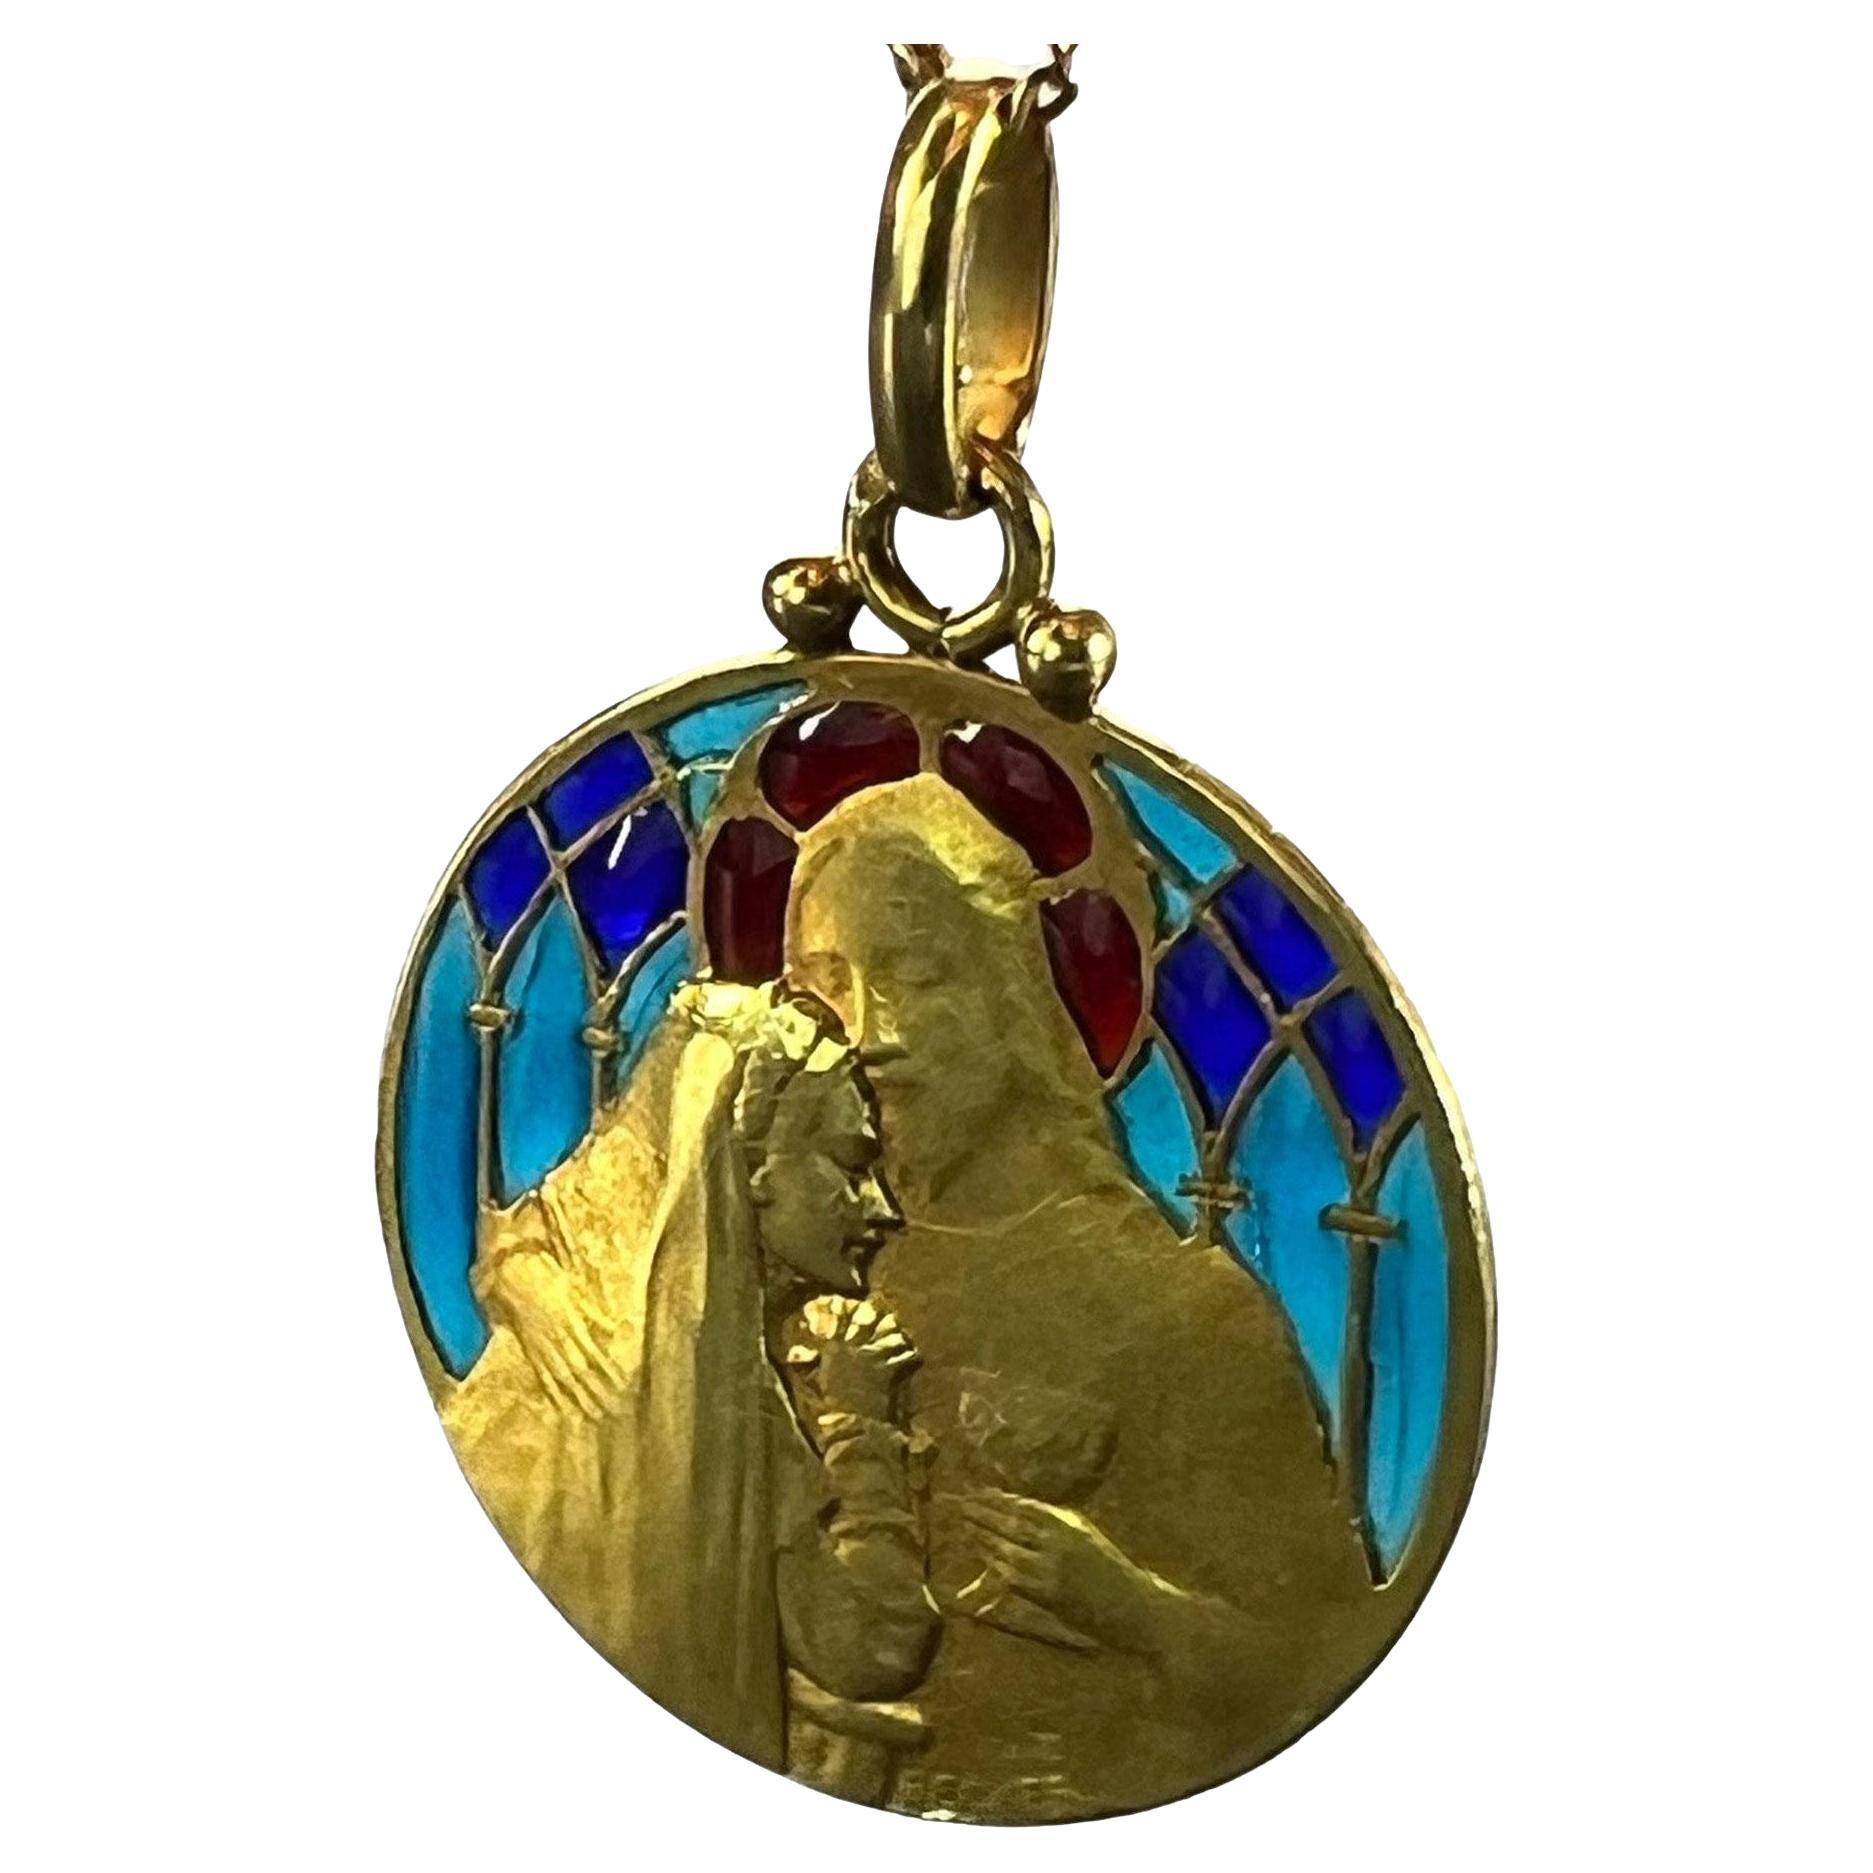 Französische Becker Holy Communion Plique-A-Jour Emaille 18K Gelbgold Anhänger Medaille